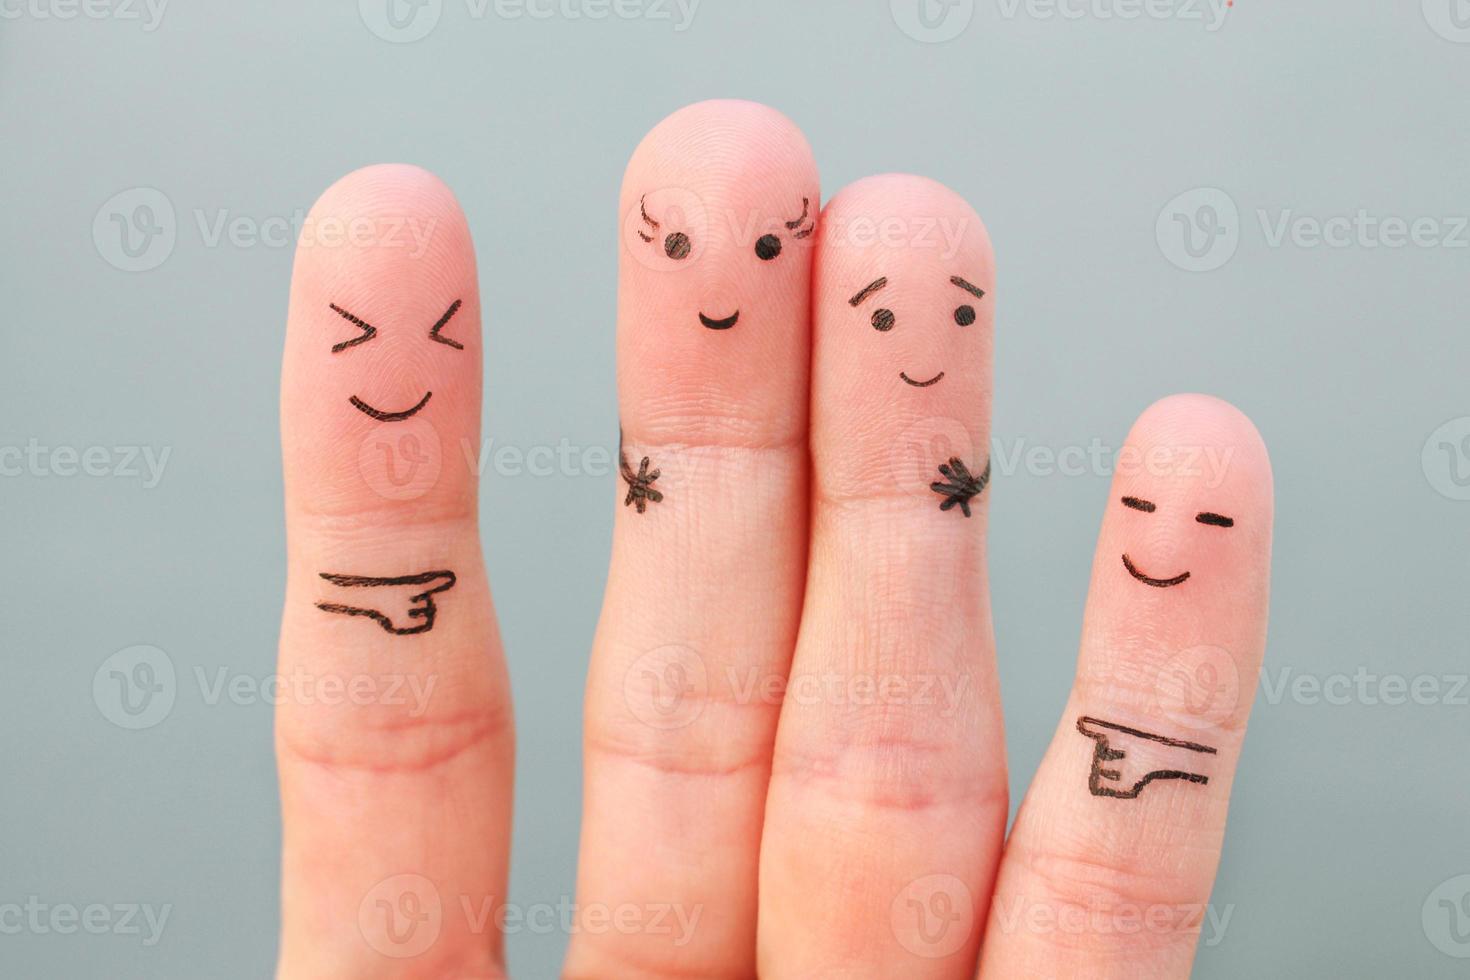 les doigts art de personnes. concept femme plus grand que homme, autour rire à eux. photo